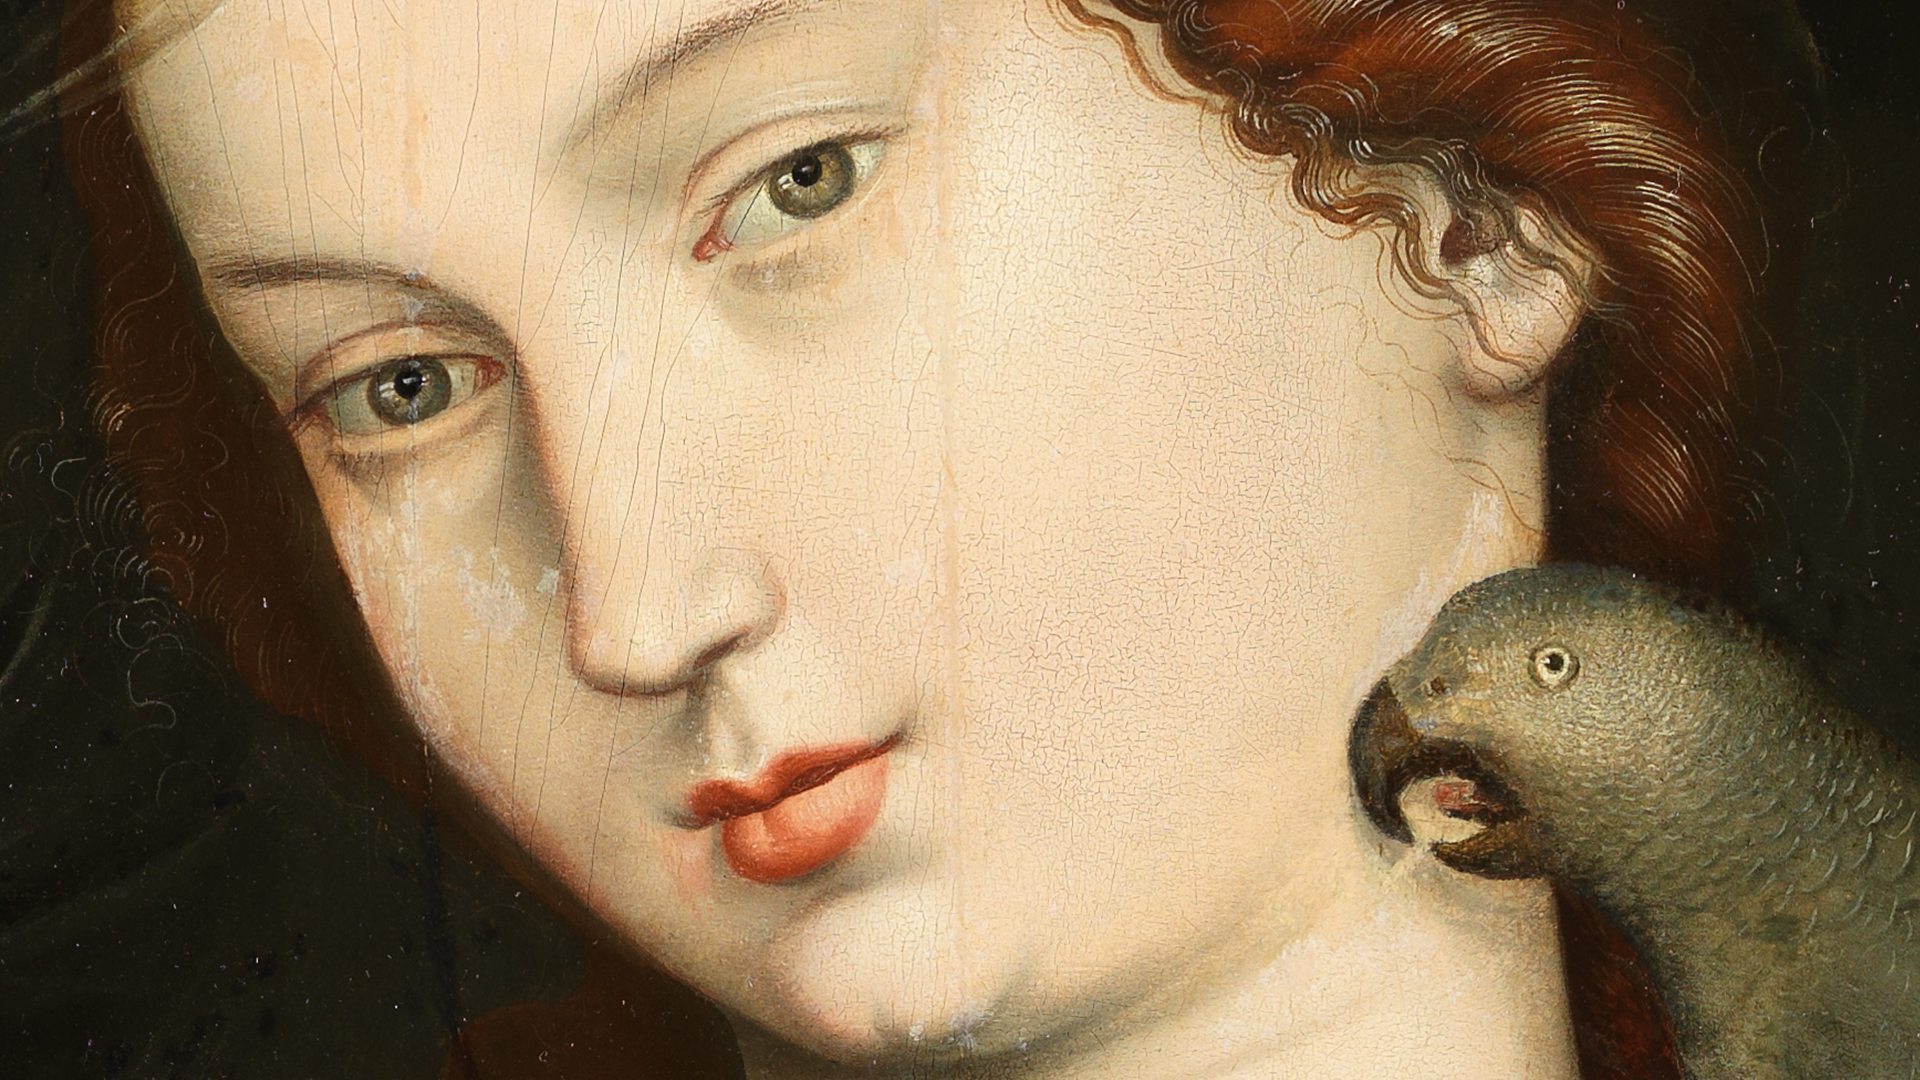 Detail der Augenpartie Marias aus Hans Baldung Griens Gemälde Maria mit Kind und Papageien. Die Frau hat rote Haare und stark rote Lippen. Rechts neben ihr ist ein Papagei.